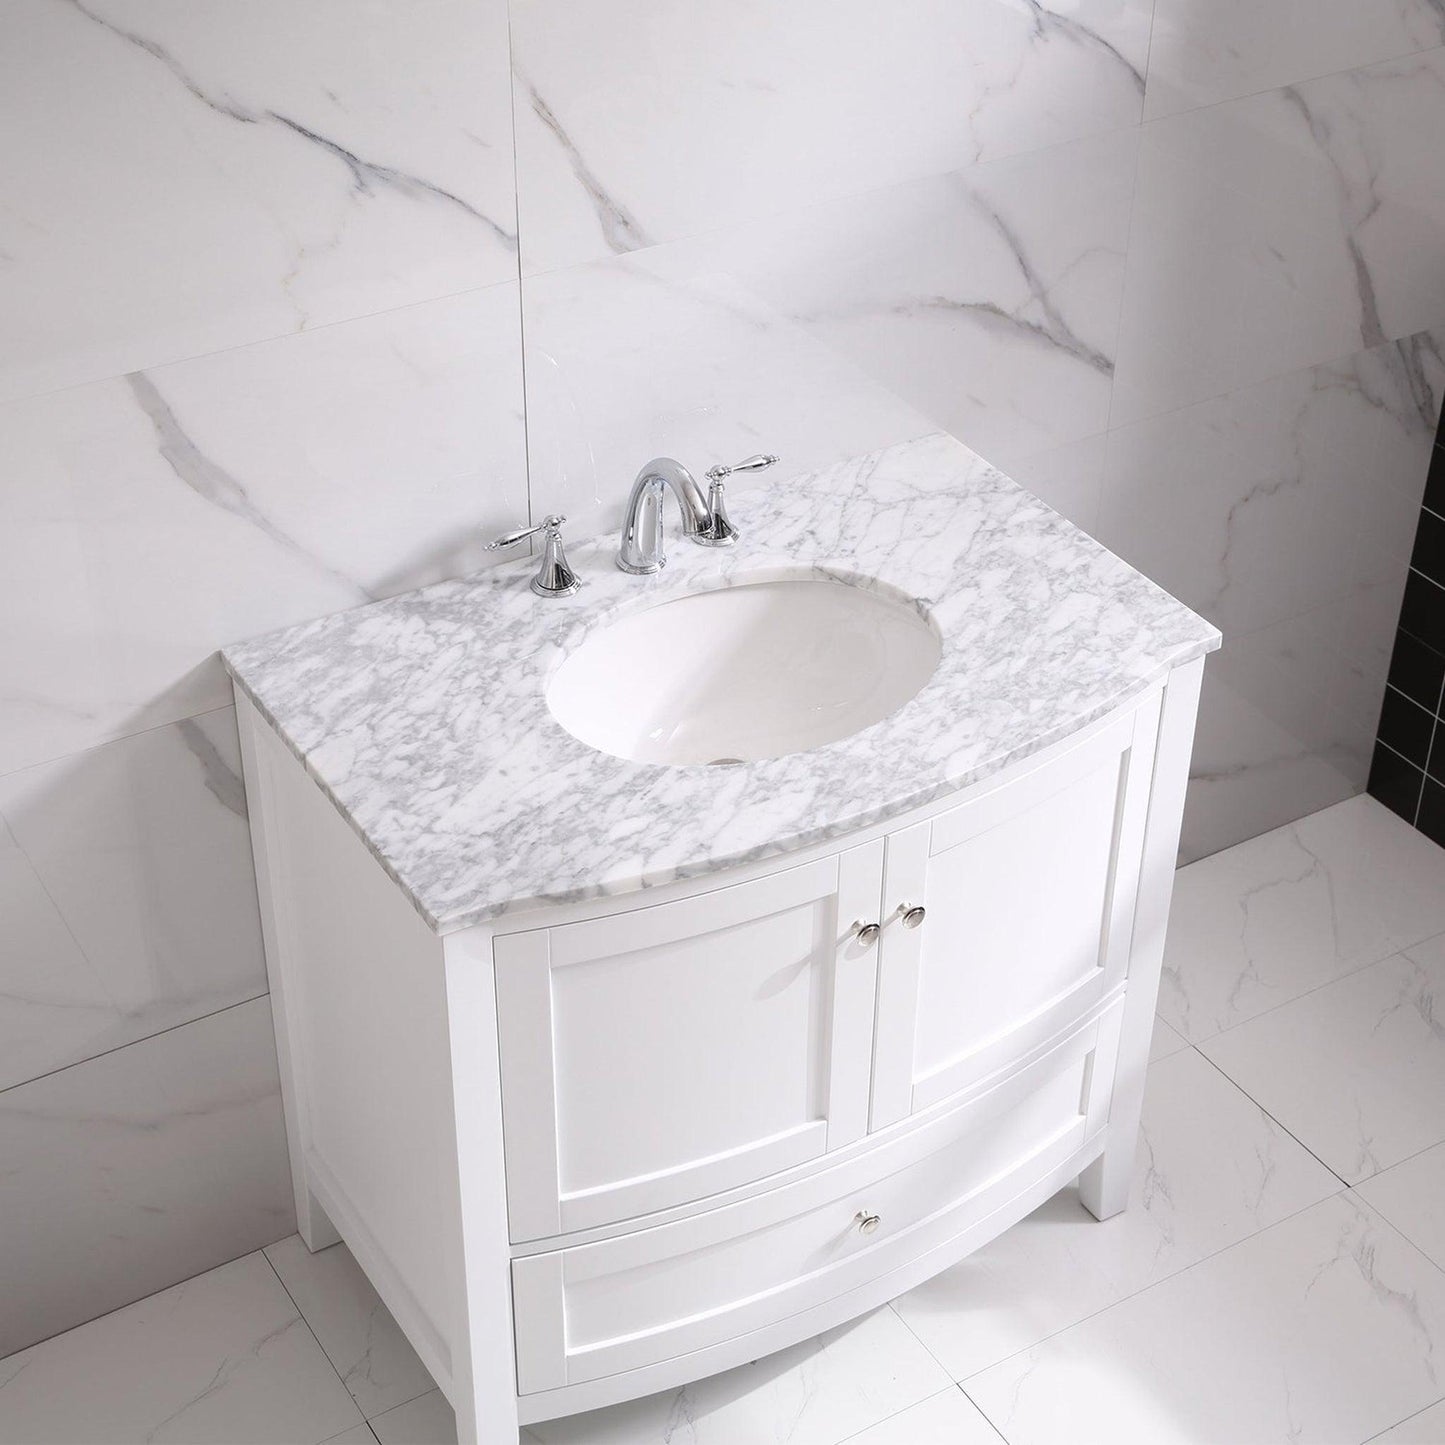 Eviva Stanton 36" x 35" White Freestanding Bathroom Vanity With Single Undermount Sink